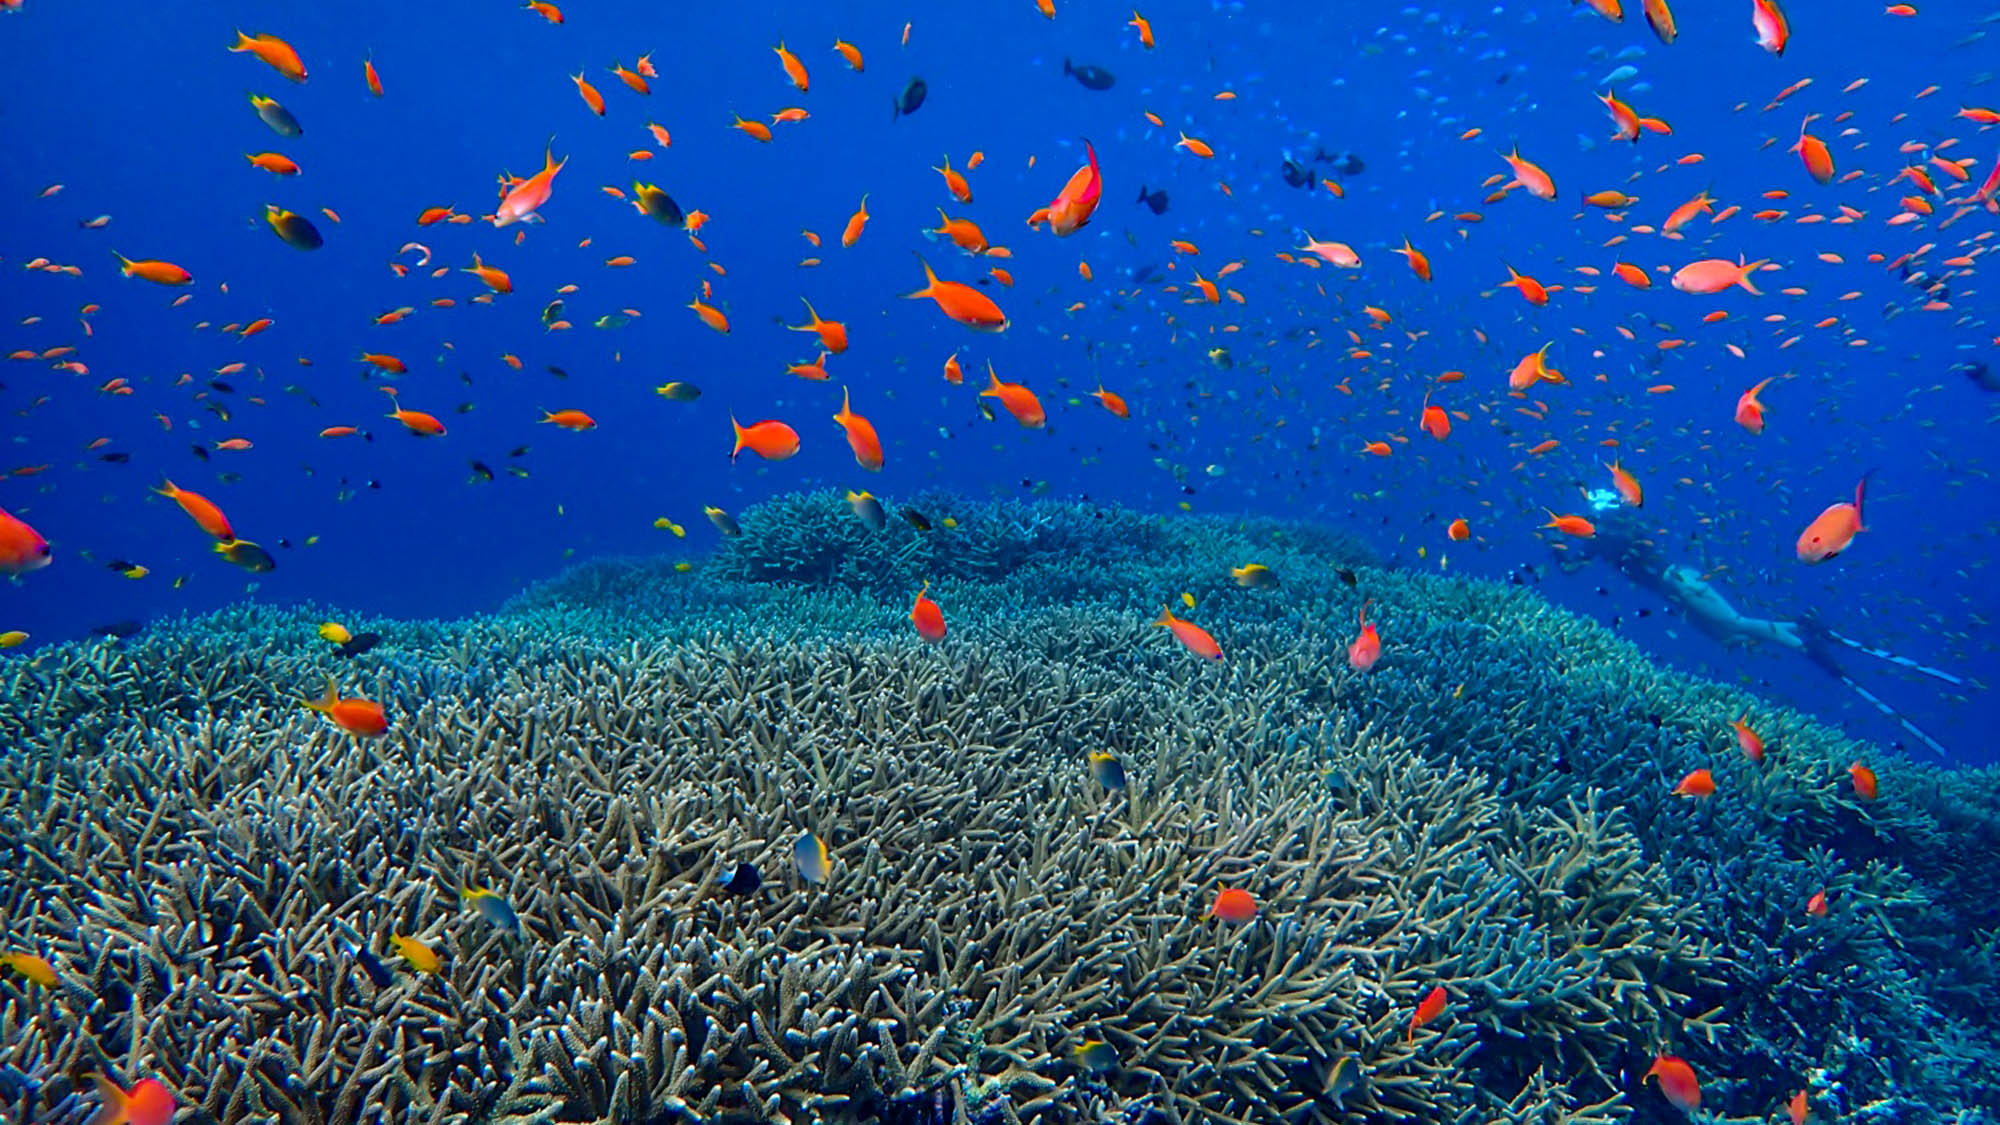 ・【海】海に潜れば目の前で色とりどりの熱帯魚が泳ぎ回ります